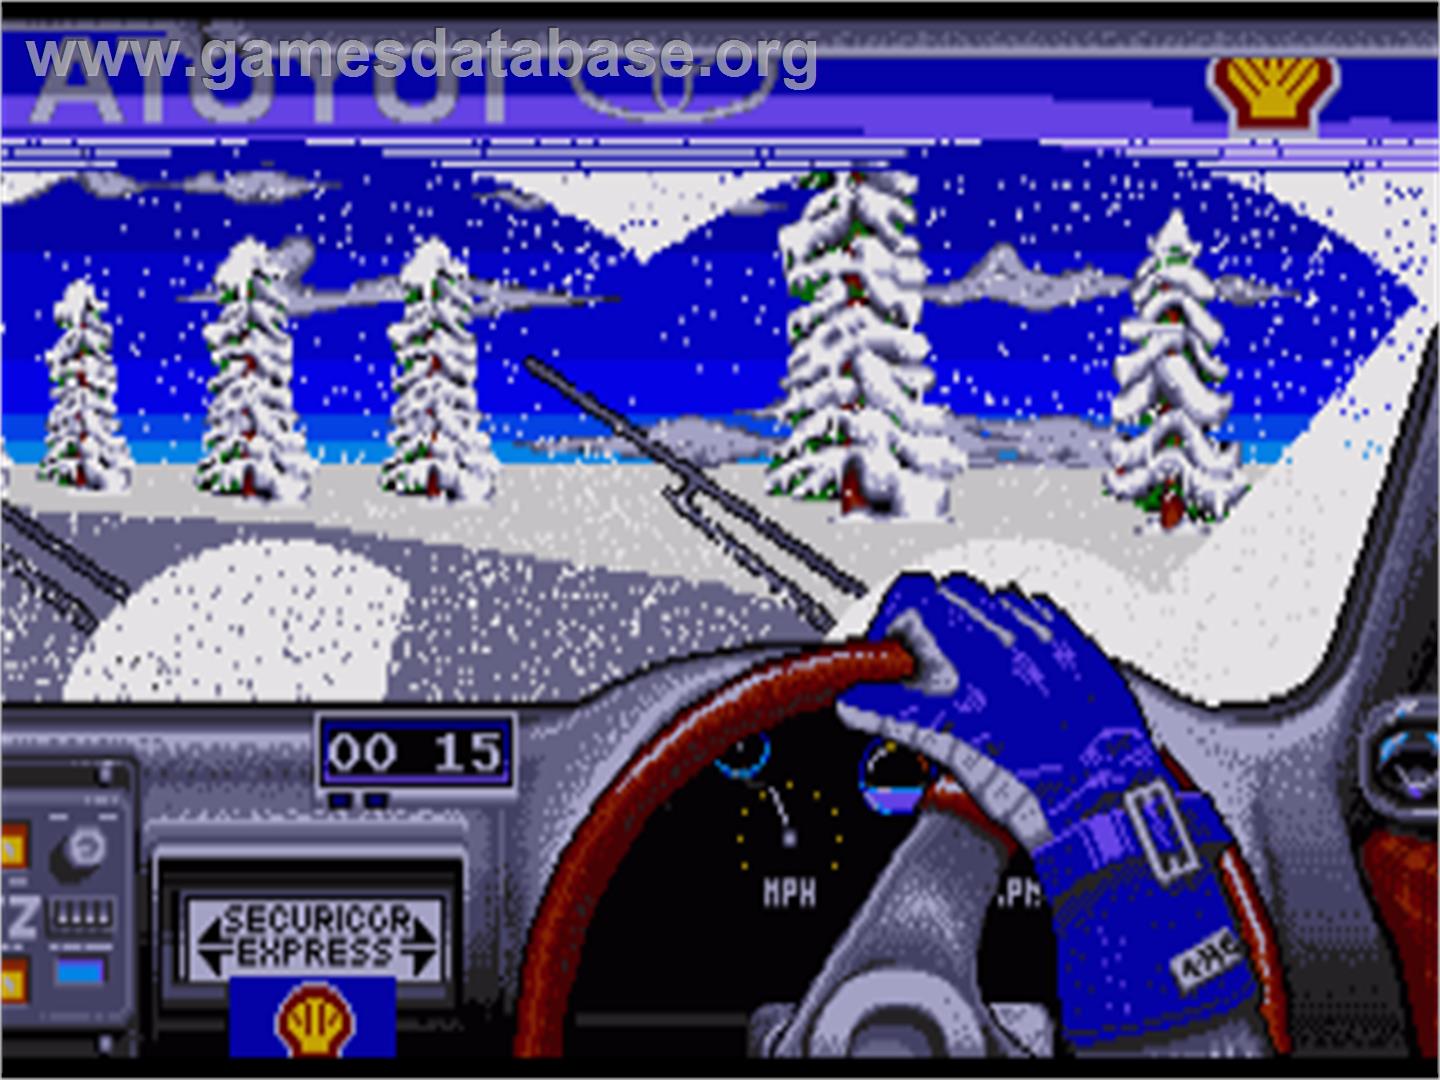 Toyota Celica GT Rally - Commodore Amiga - Artwork - In Game